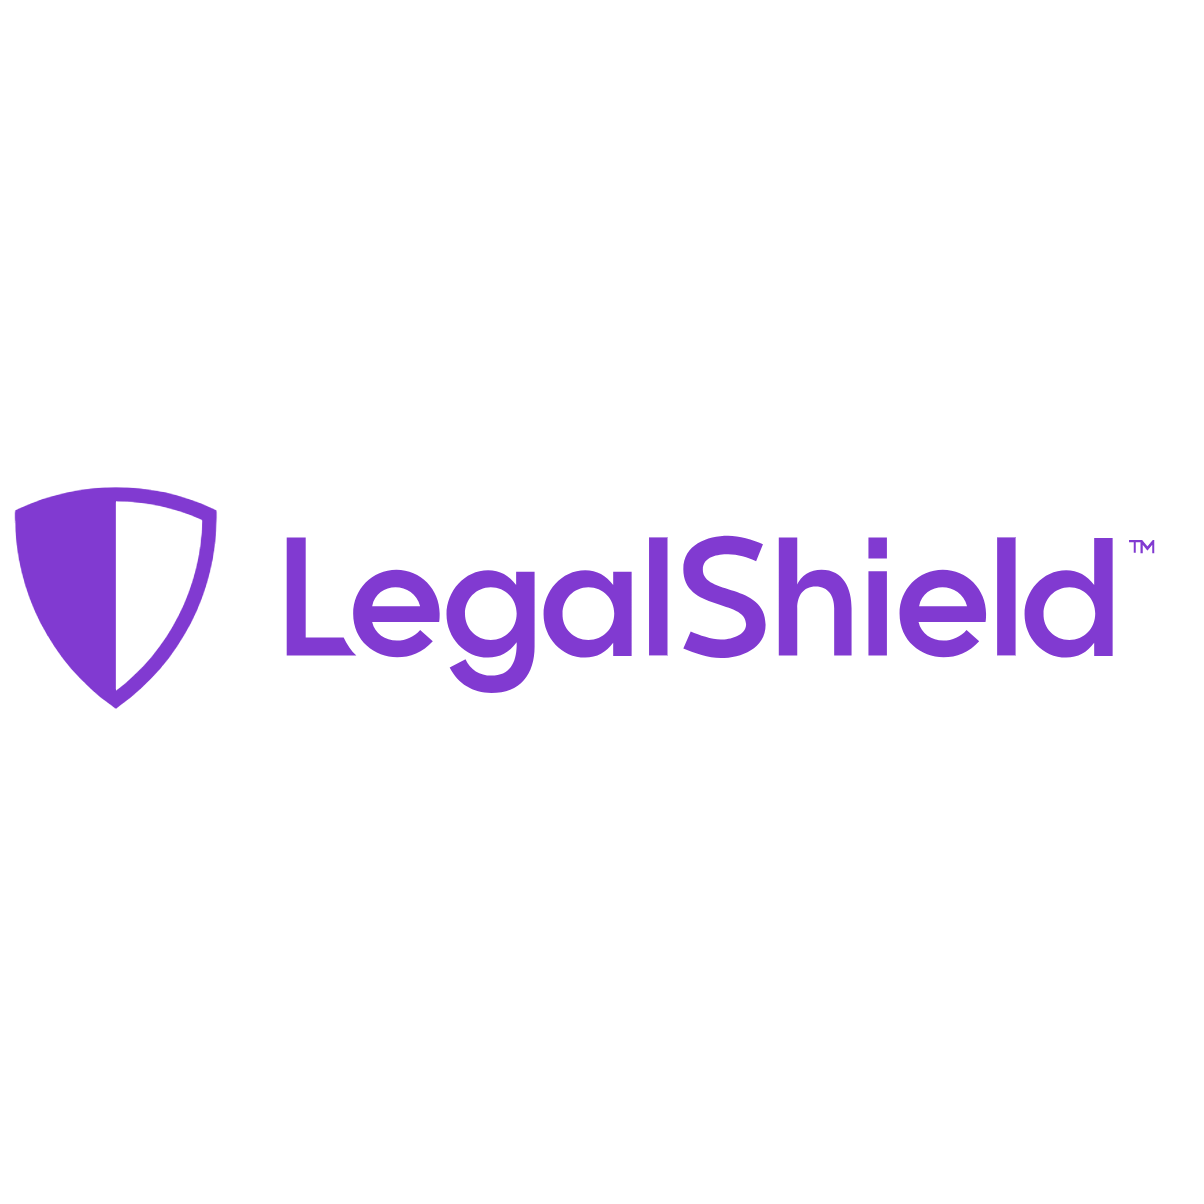 LegalShield Prepaid Legal Plans & Legal Services